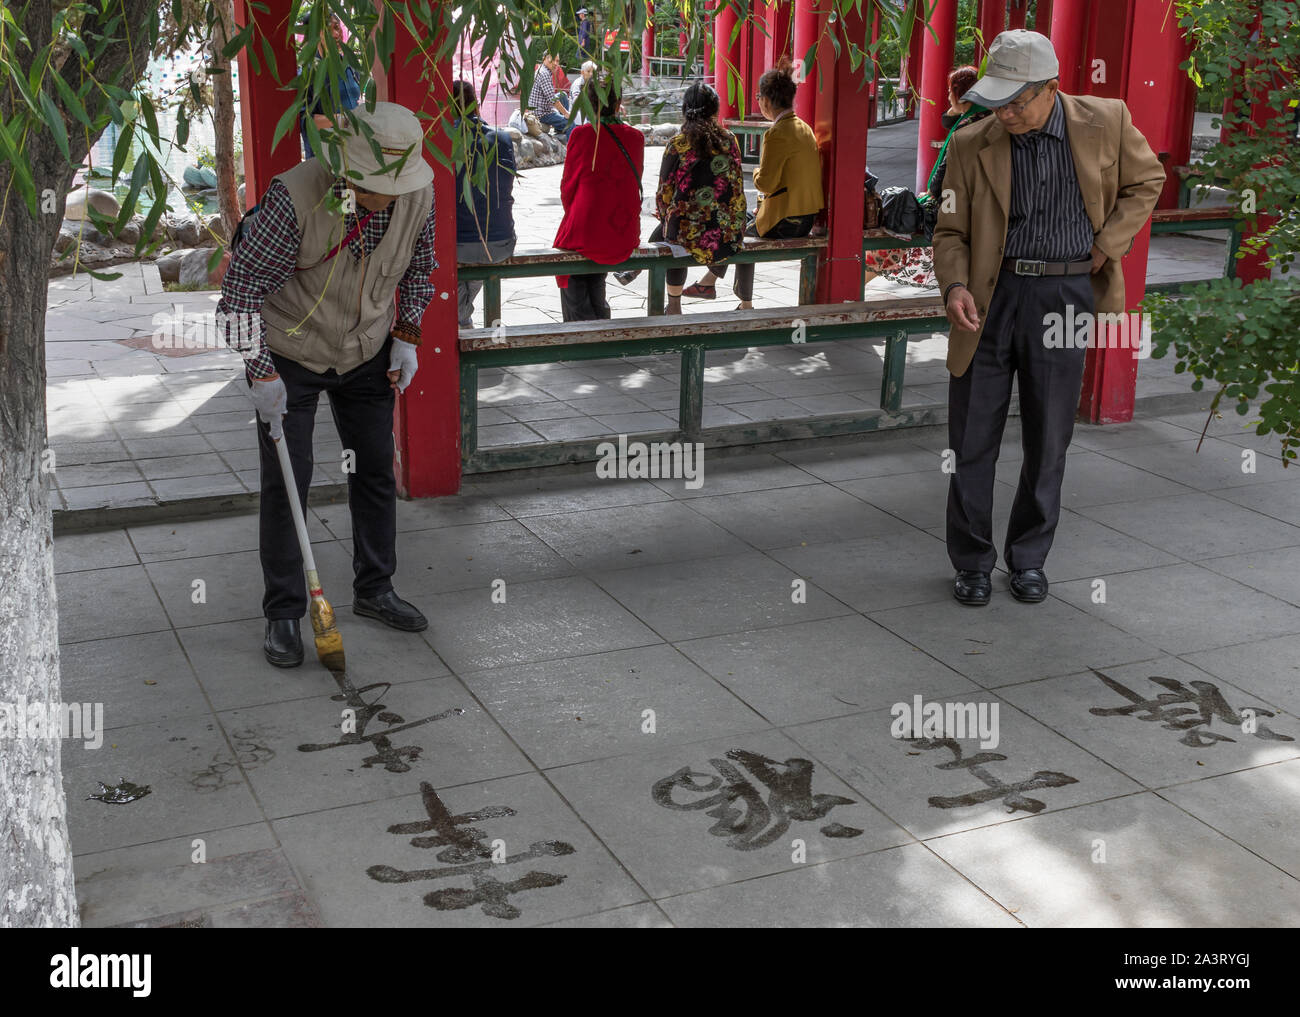 Urumqi, China - Urumqi ist die Heimat der bunten Uigurischen Volksgruppe. Hier insbesondere einer alltäglichen Szene, in der die Menschen Park Stockfoto